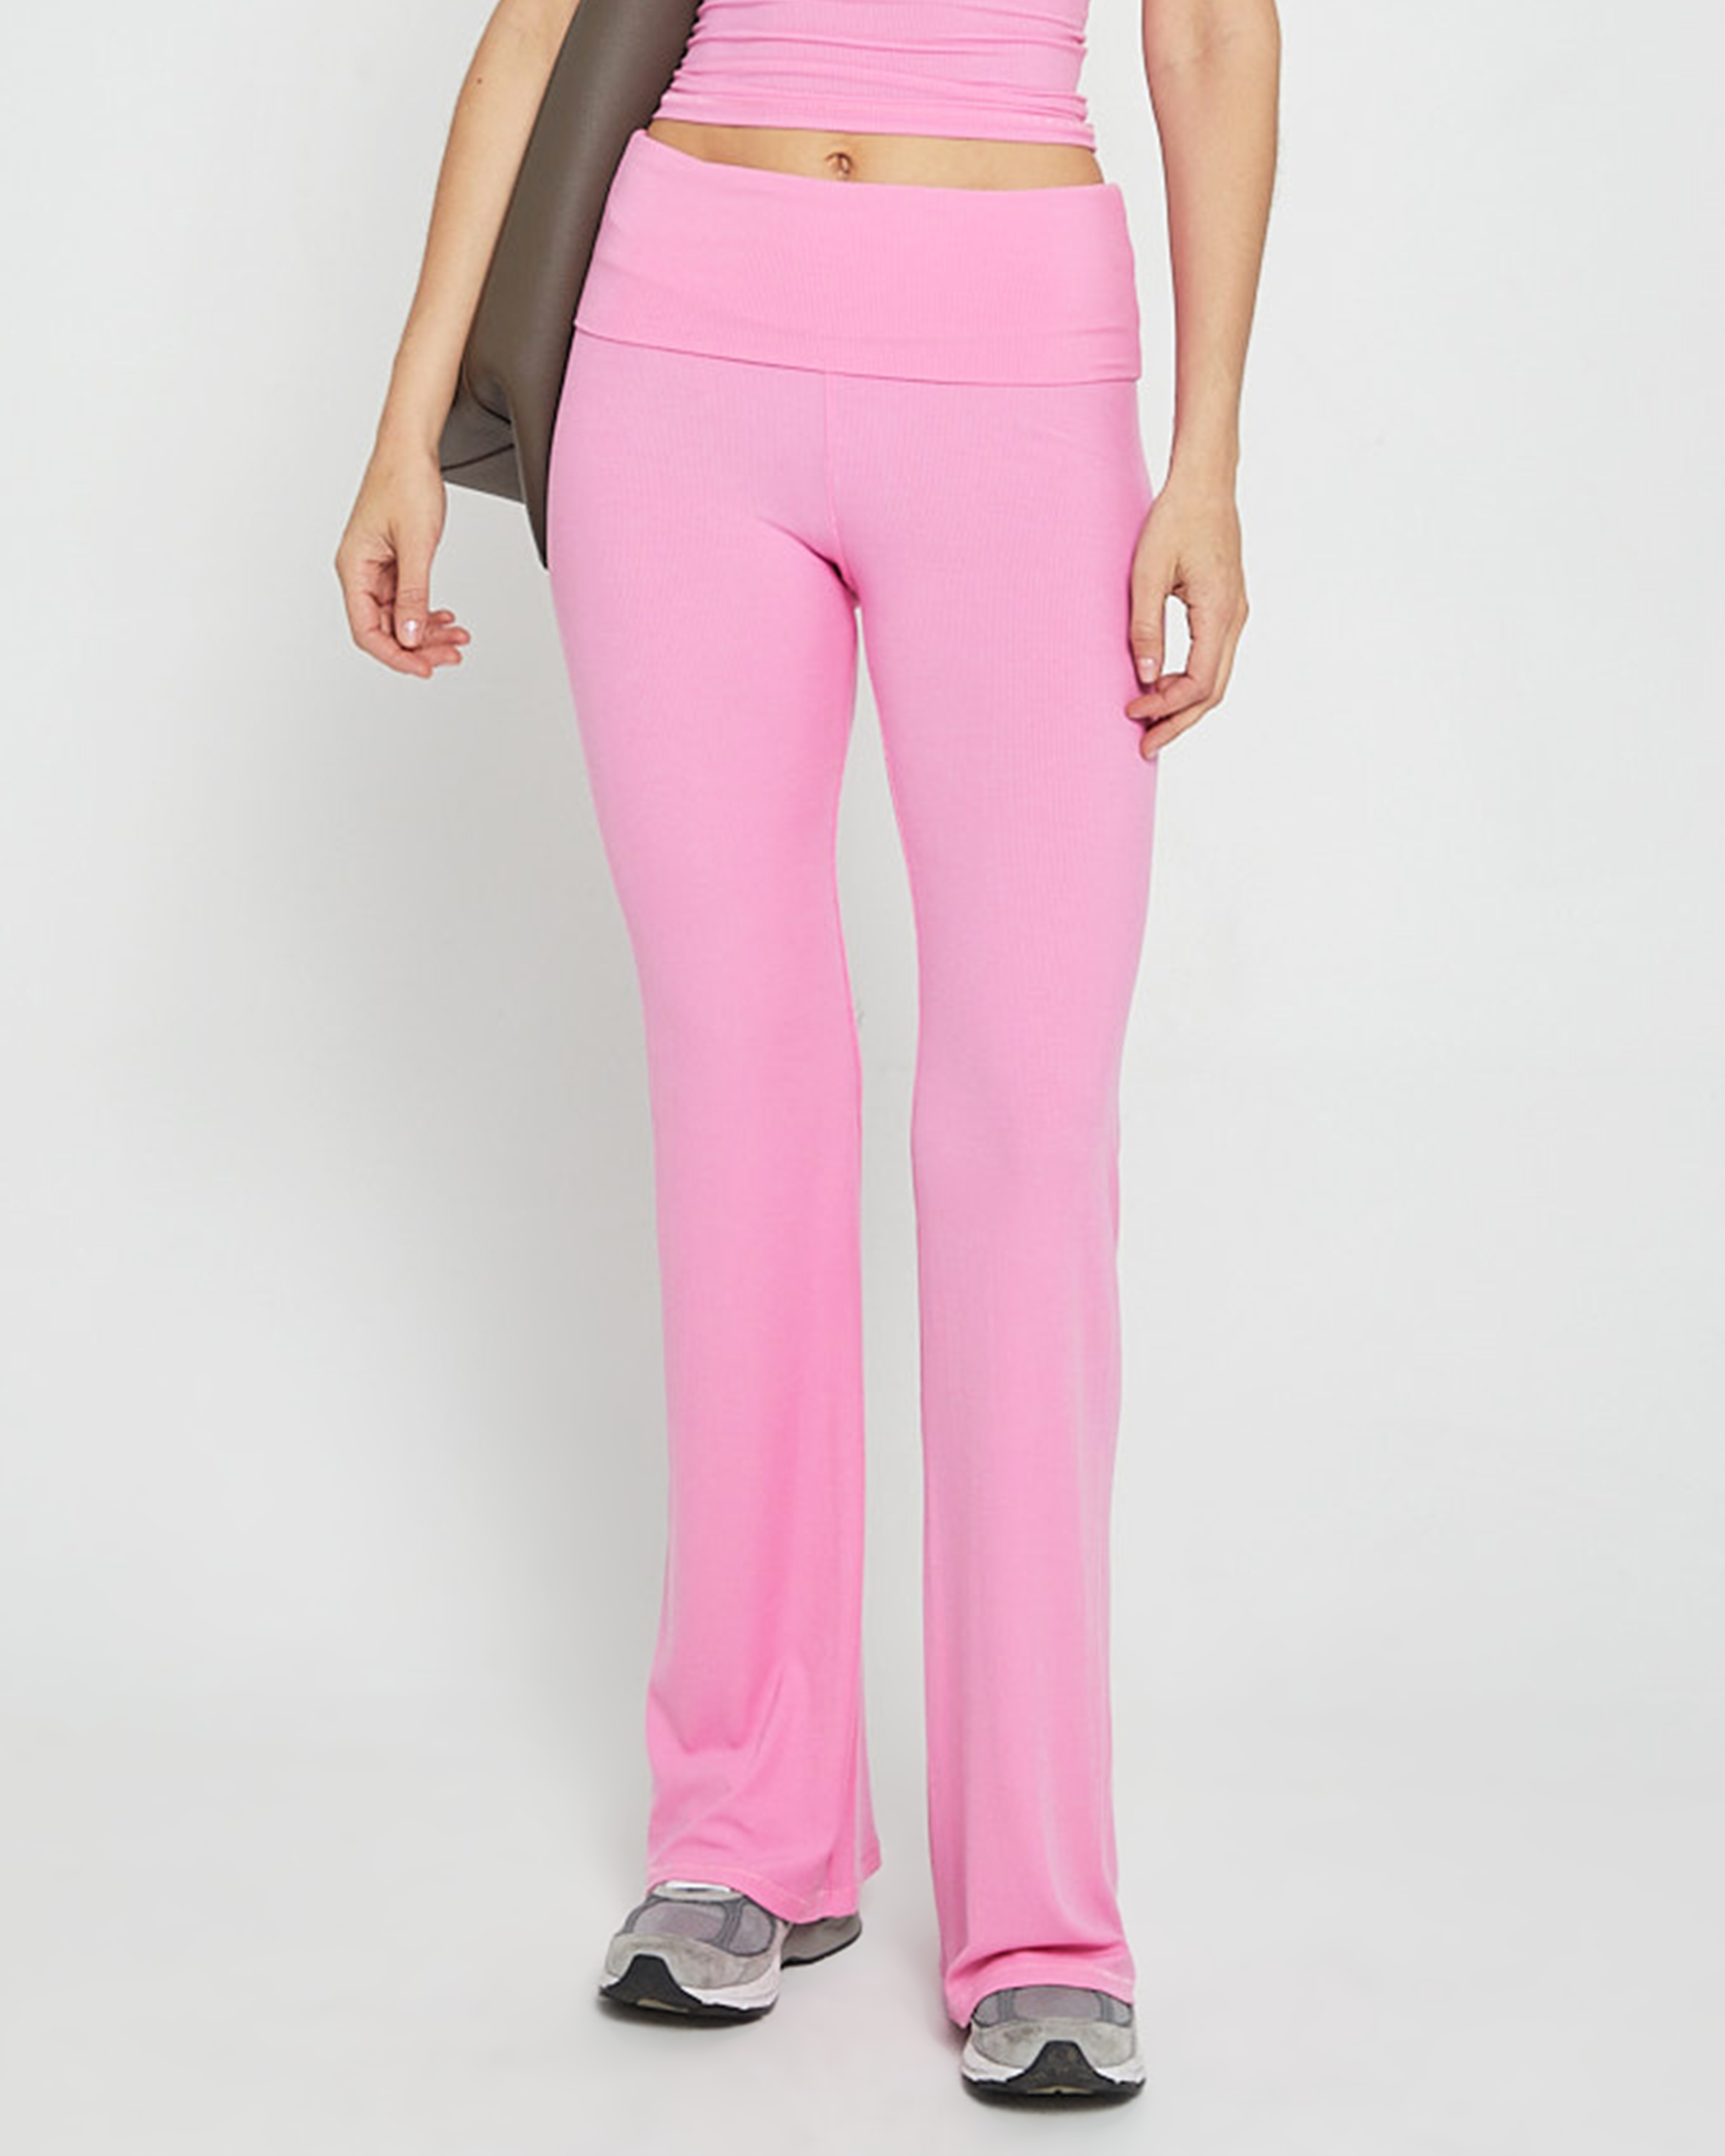 PINK Victoria's Secret, Pants & Jumpsuits, Pink Victorias Secret Mint  Foldover Solid Color Yoga Legging Pants New